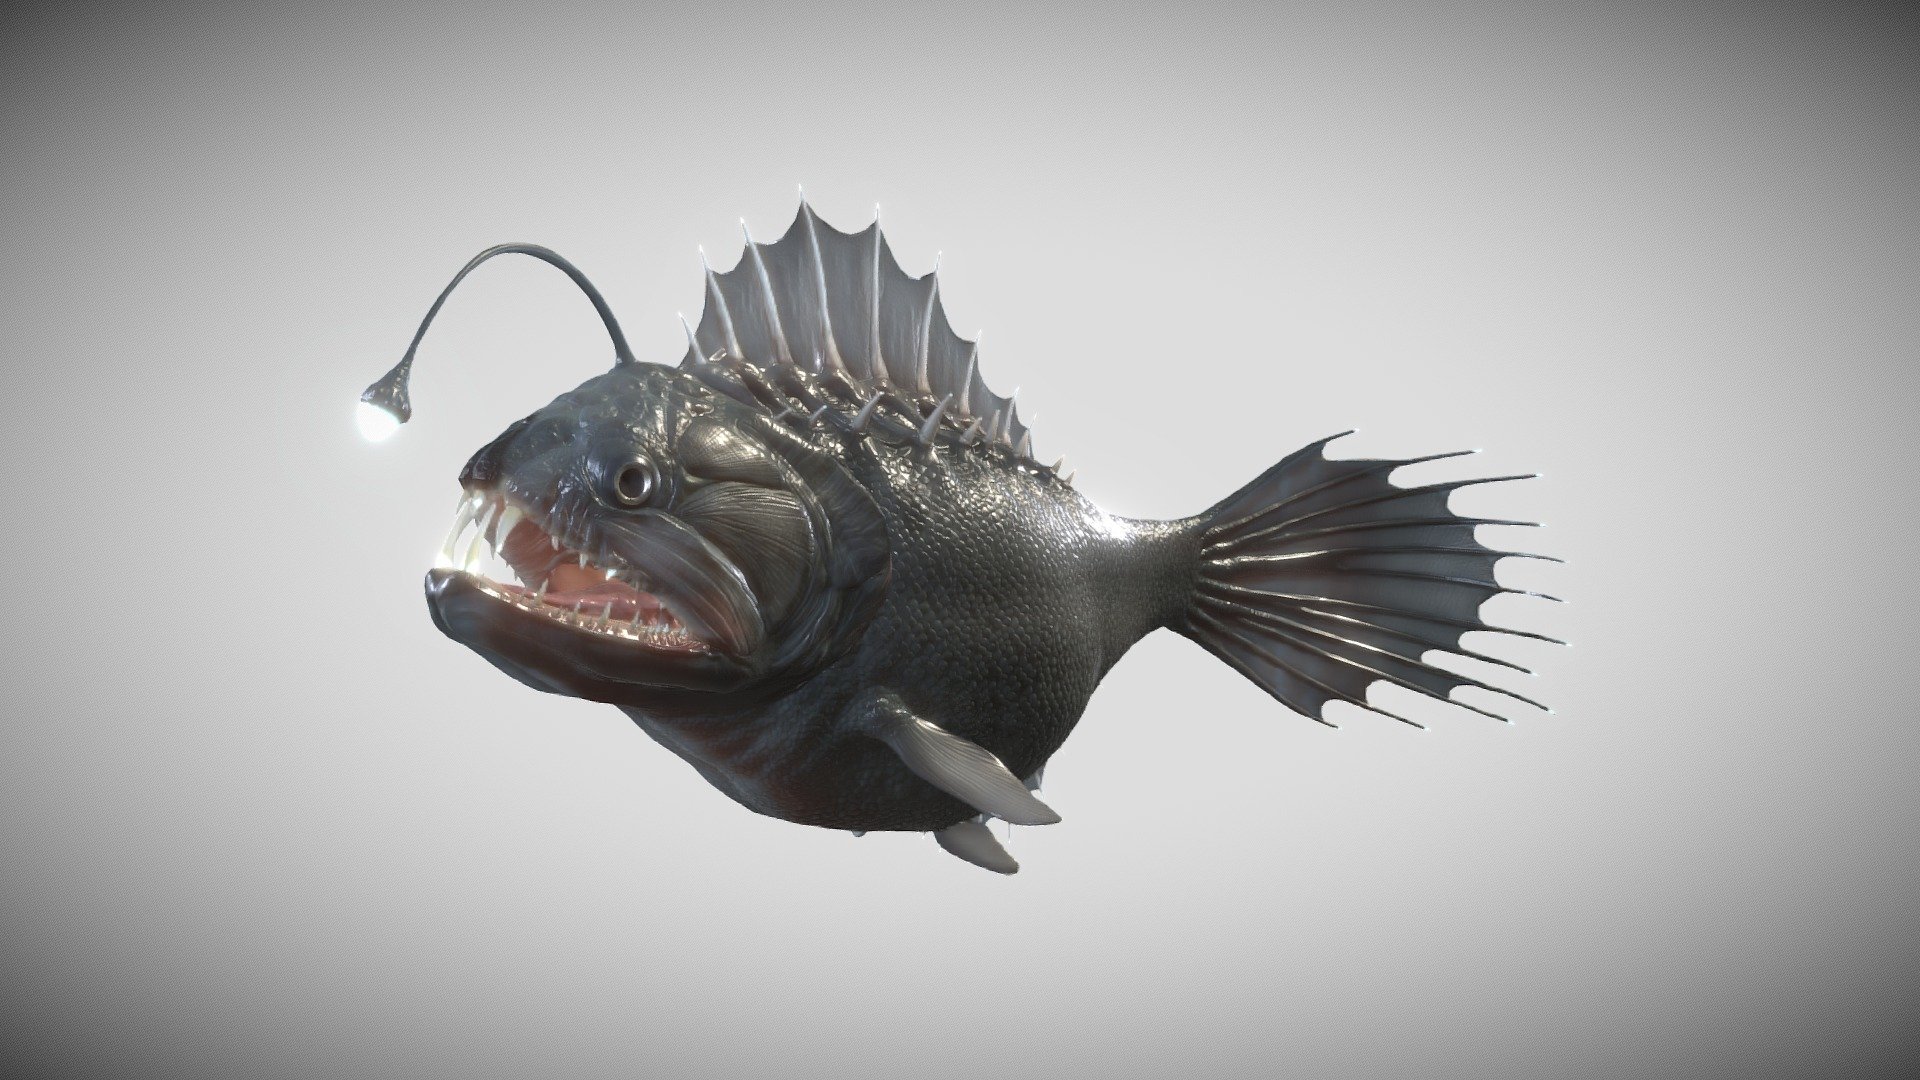 Deepsea Fish - Deepsea Fish - 3D model by Fabio Steltenpohl (@Fabio_s) 3d model